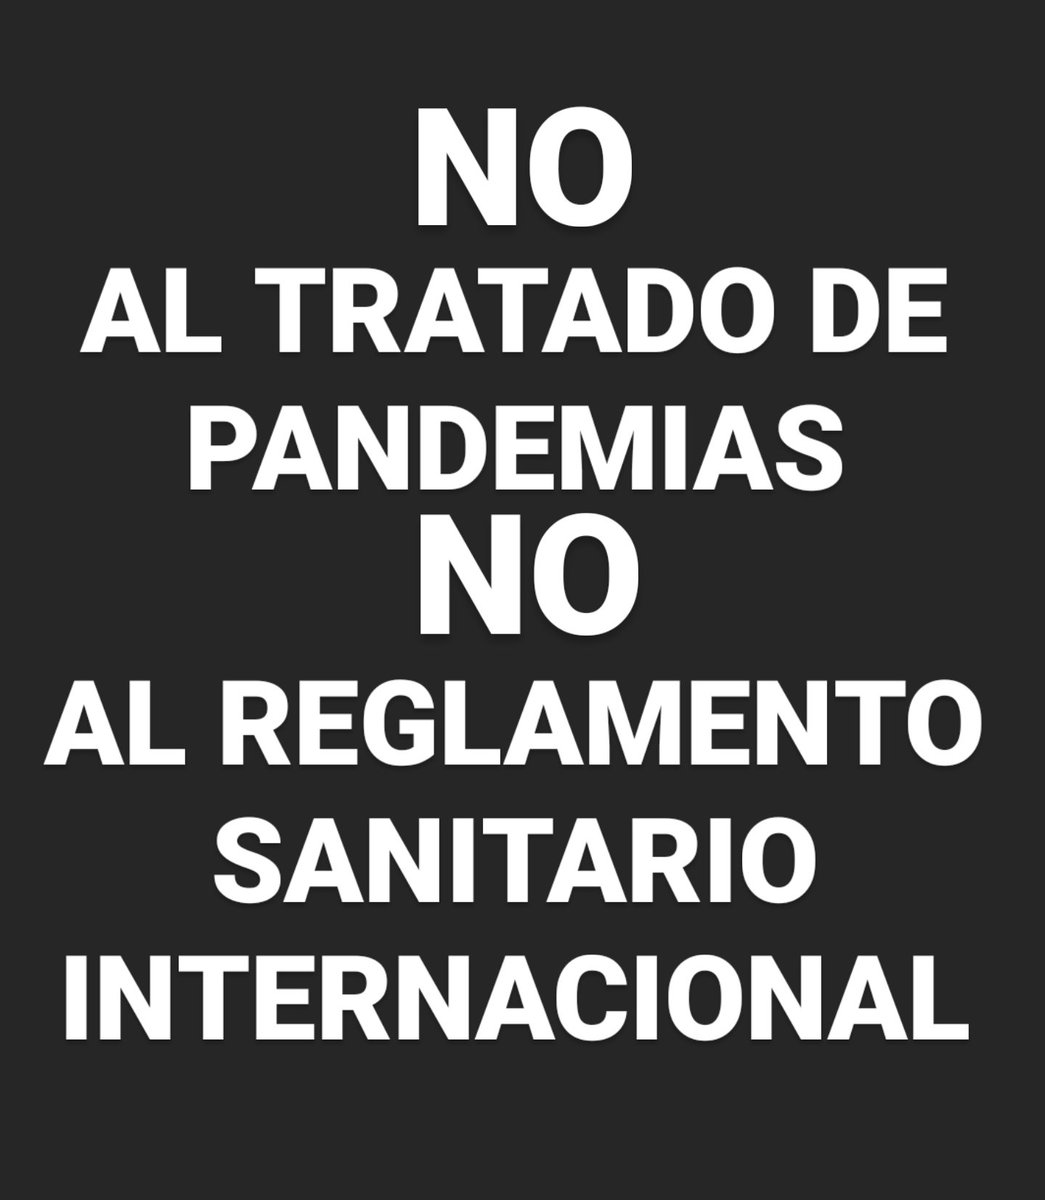 #NoAlTratadoDePandemias
#NoAlReglamentoSanitarioInternacional